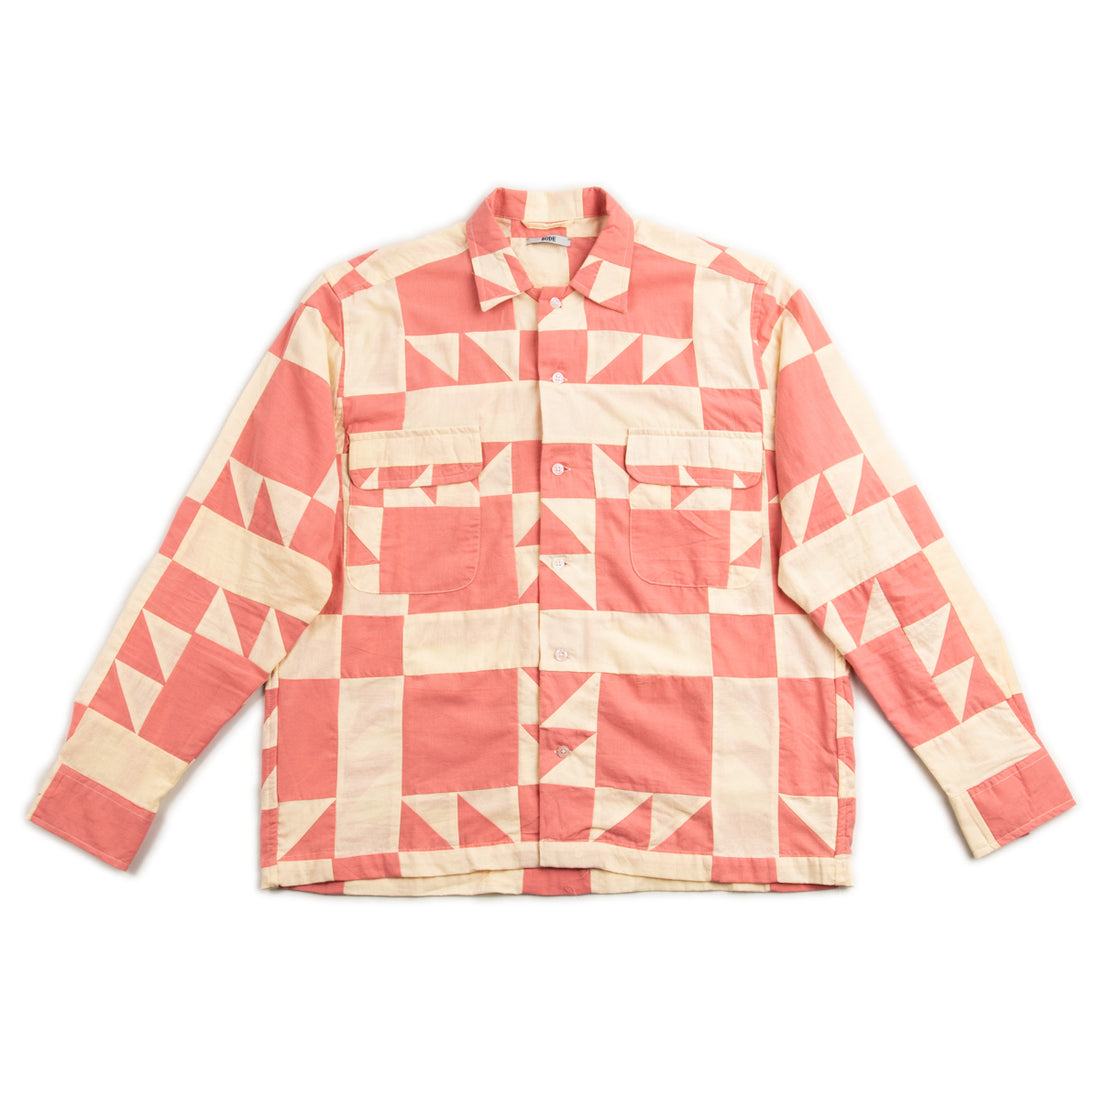 Bode Pink Quilt L/S Shirt - Standard & Strange